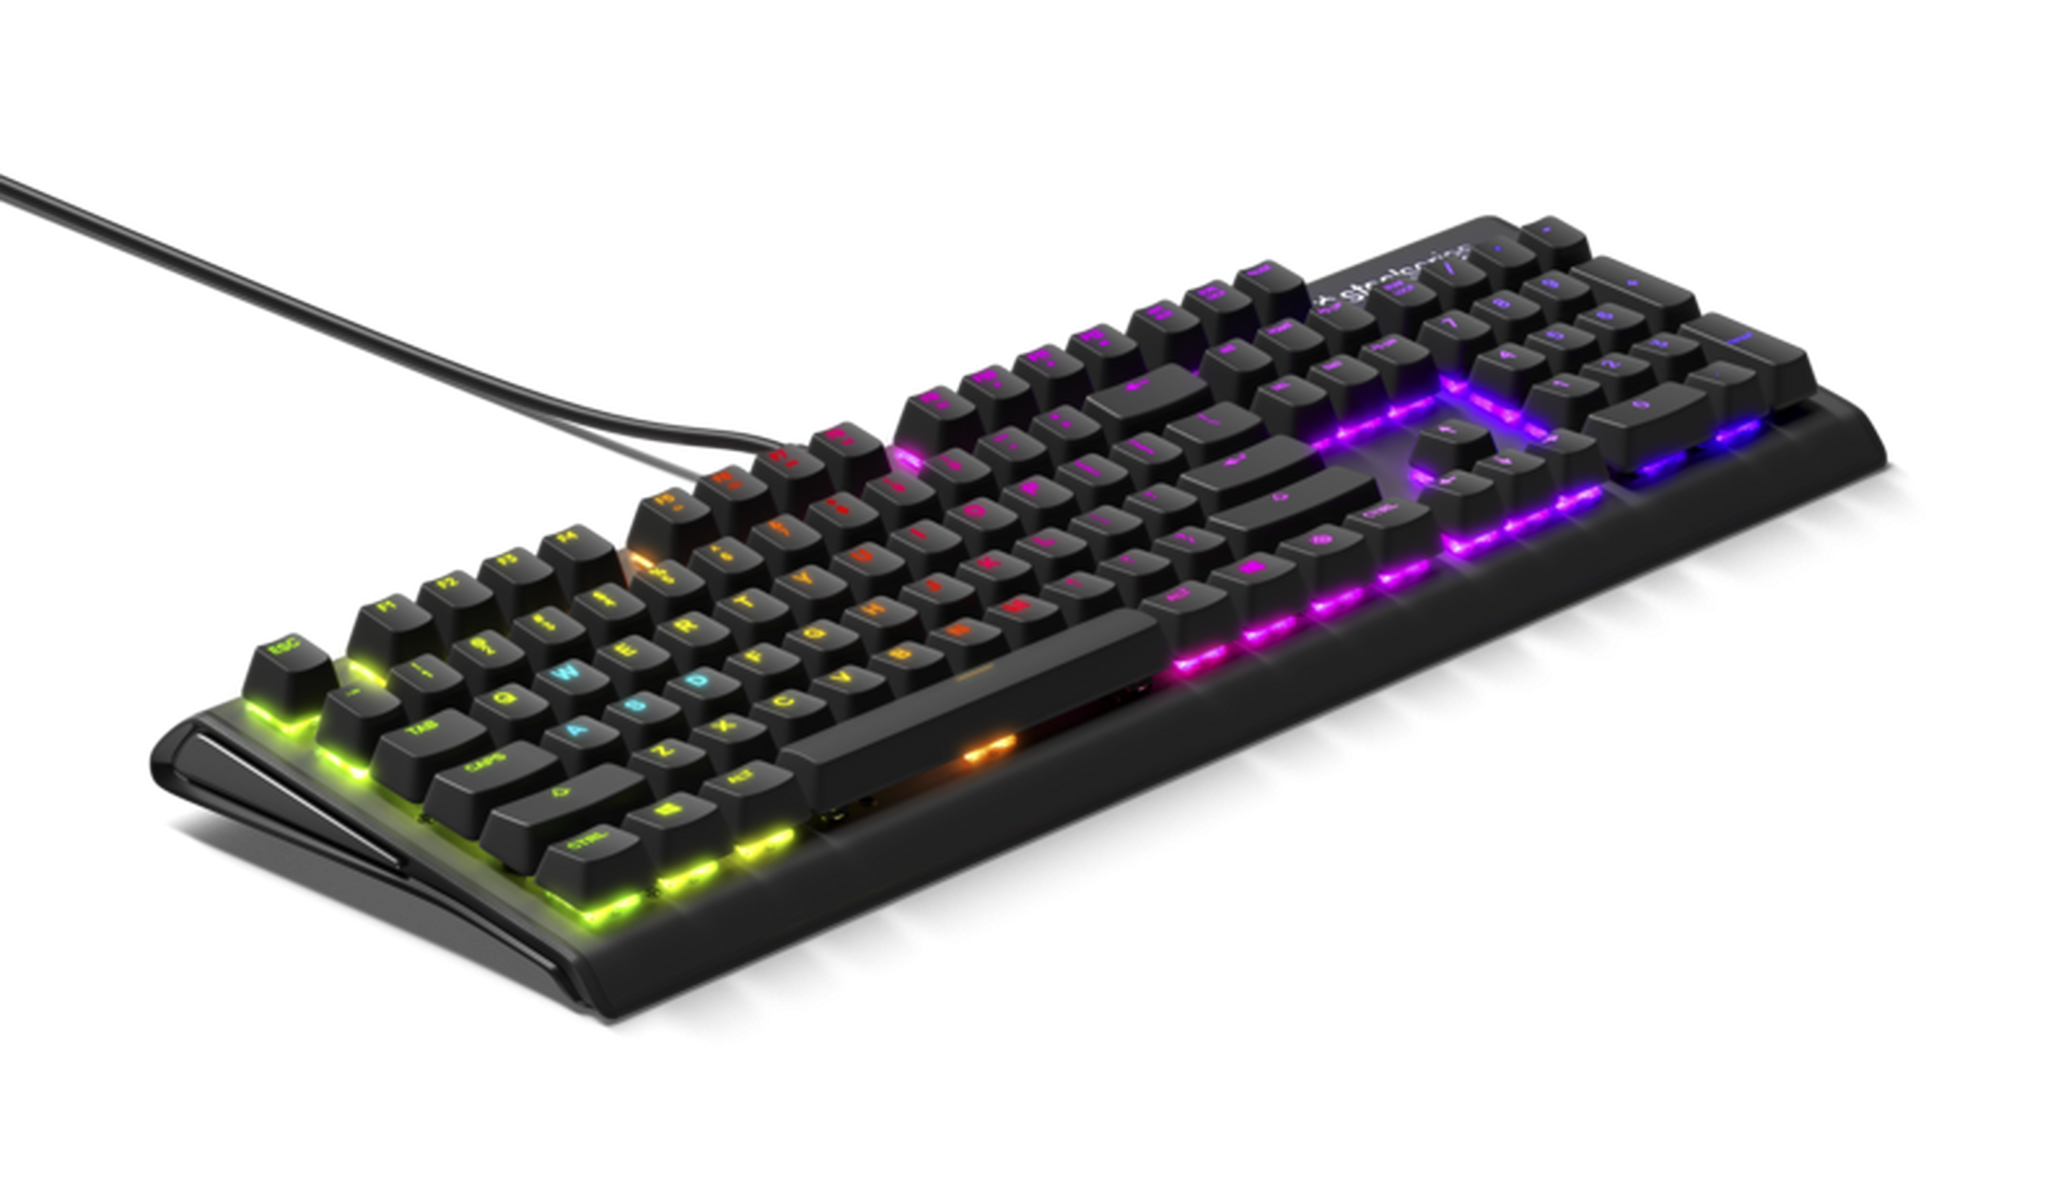 SteelSeries Apex M750 Prism Gaming Keyboard